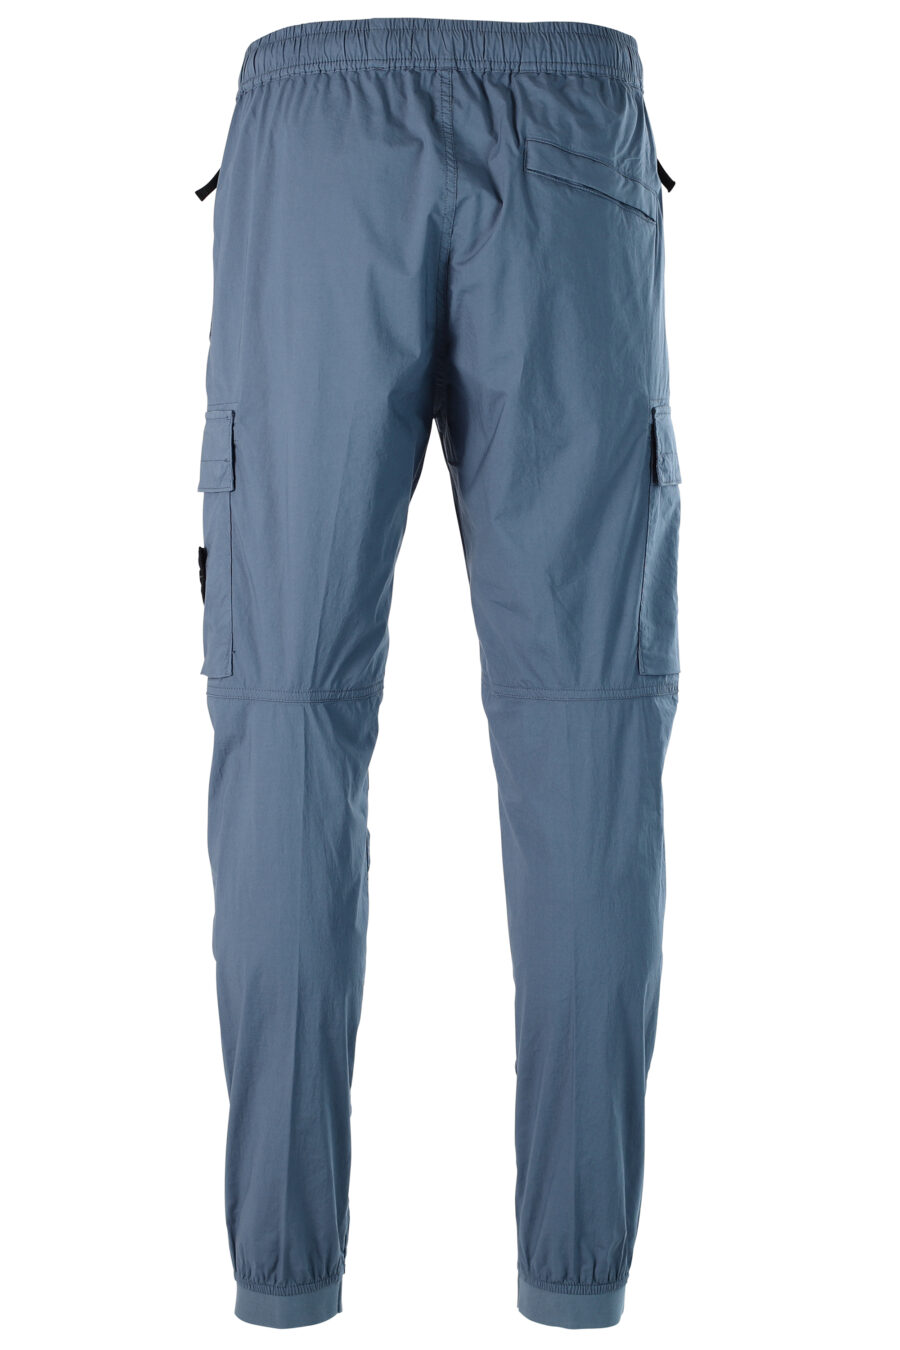 Pantalón azul estilo cargo con resorte y parche - 8052572543081 3